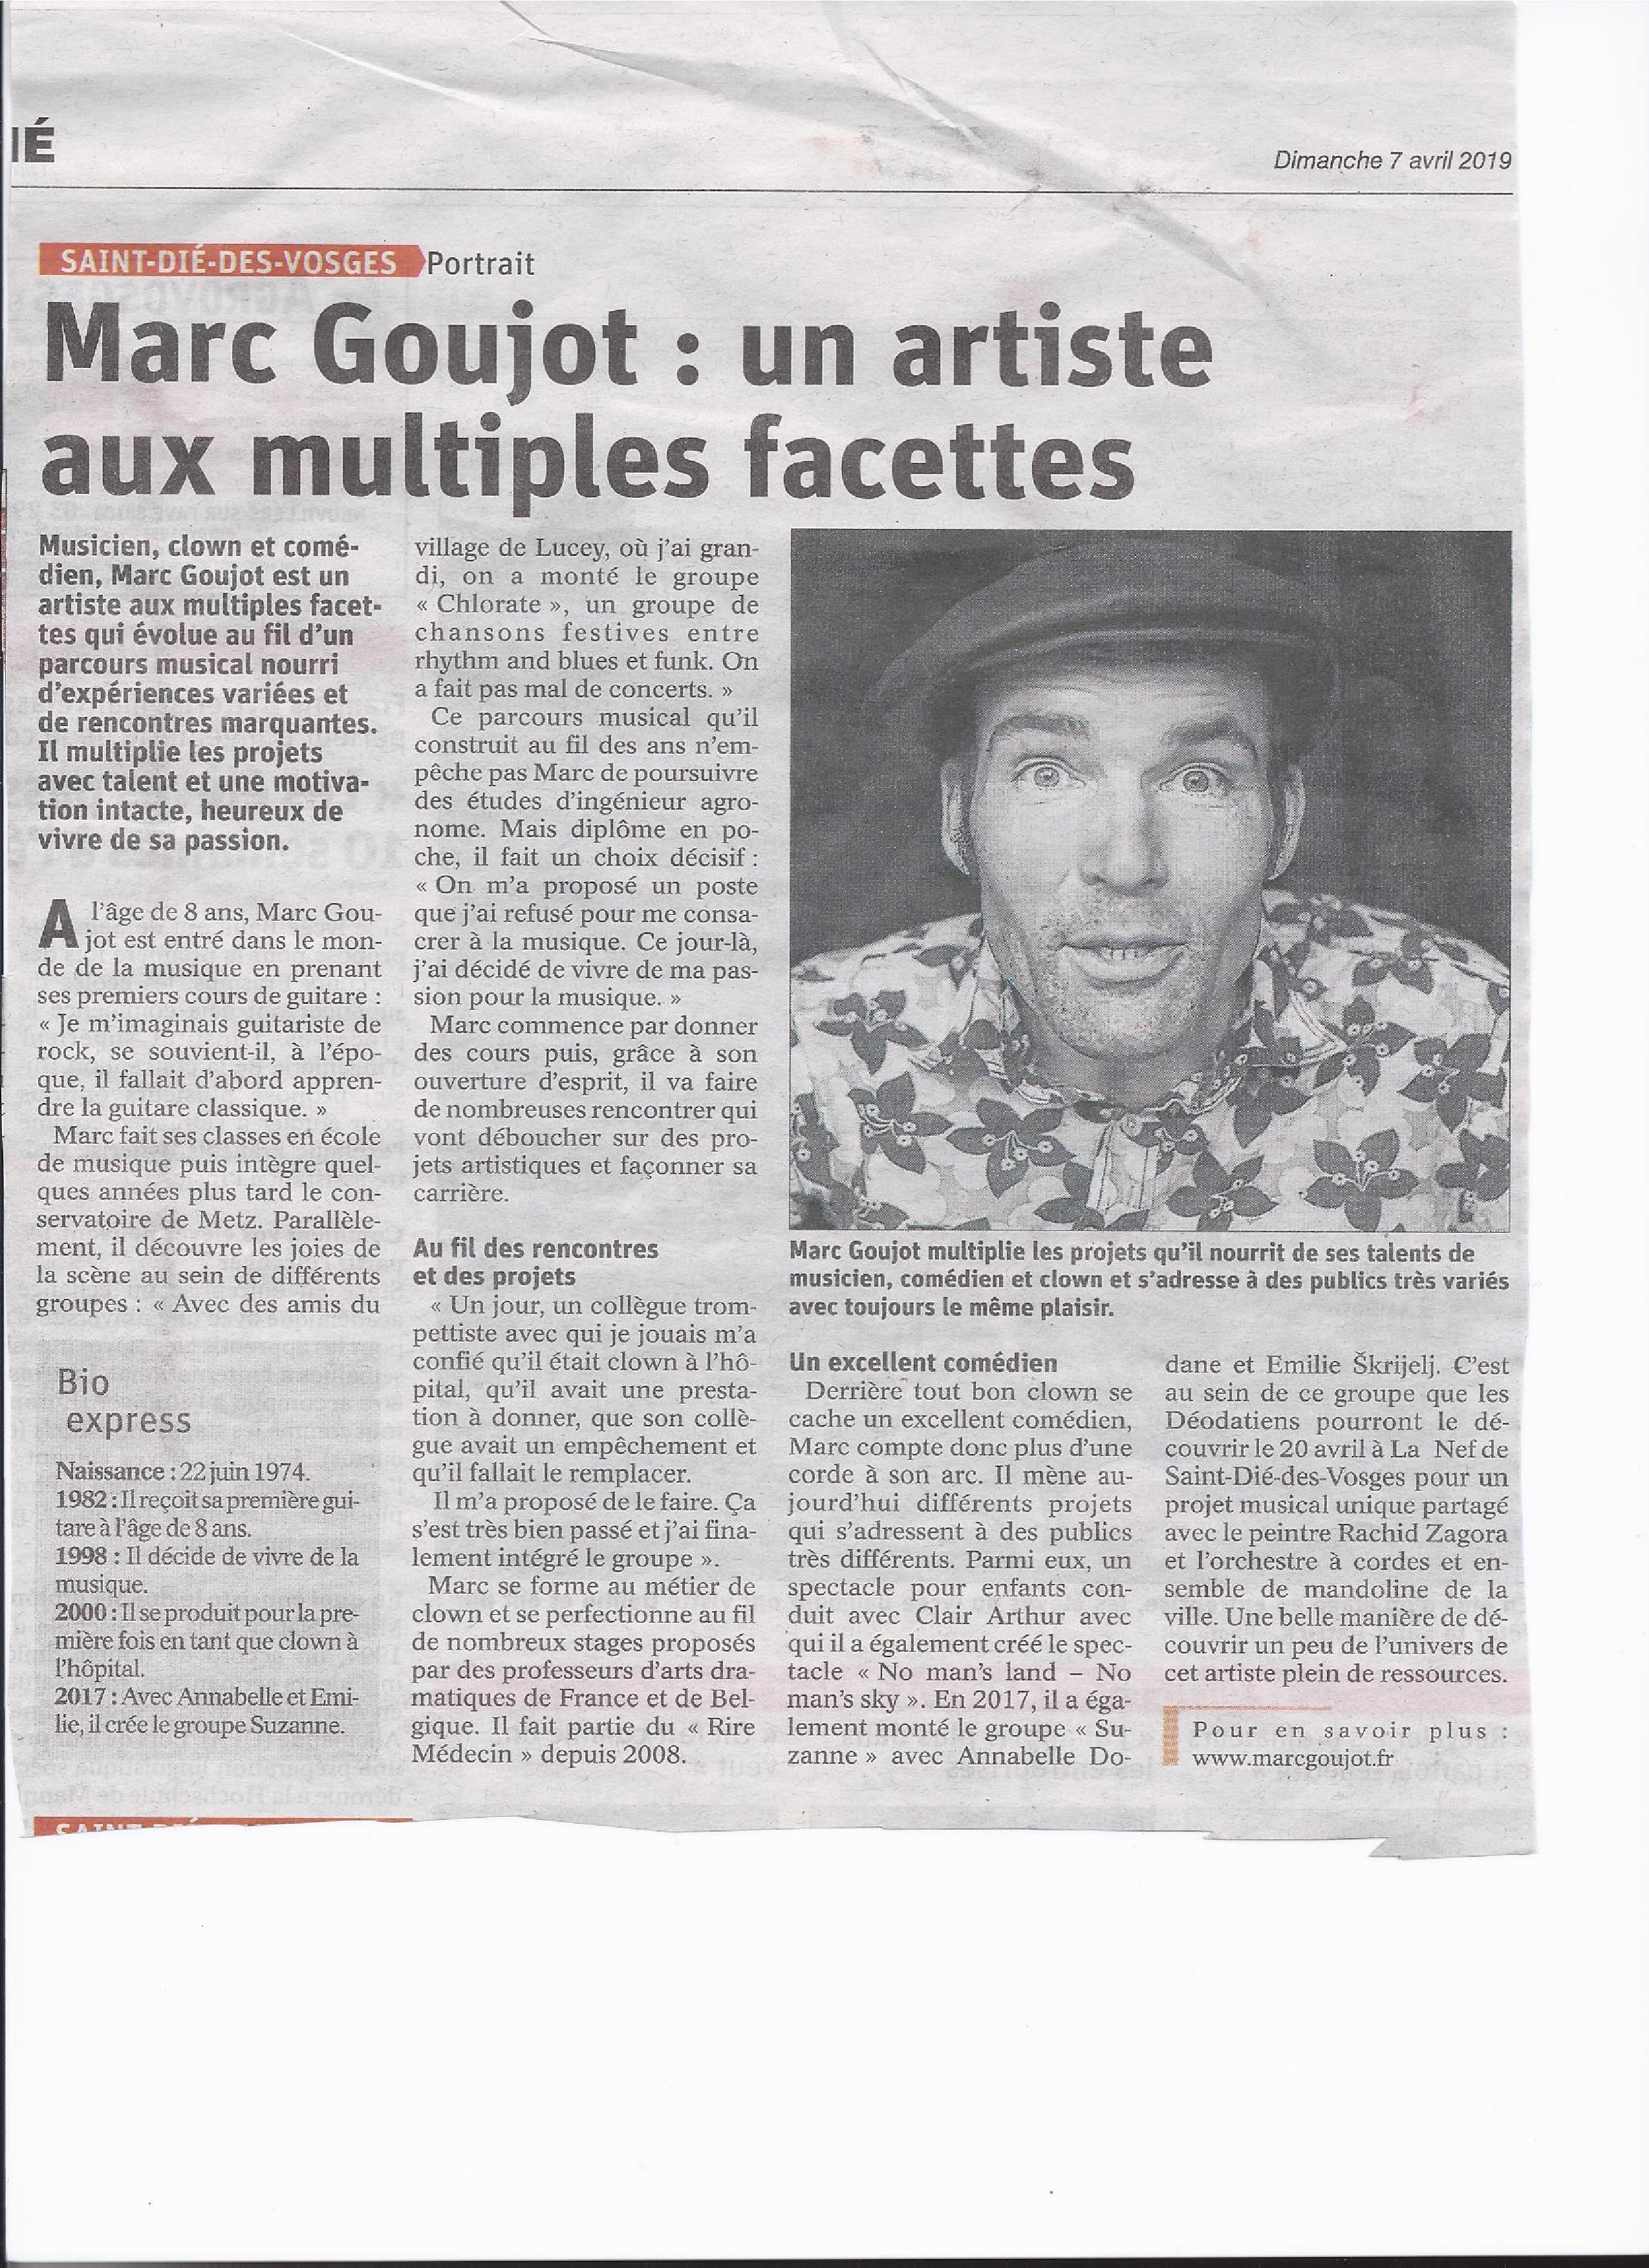 19 04 07 Vosges Matin Marc Goujot